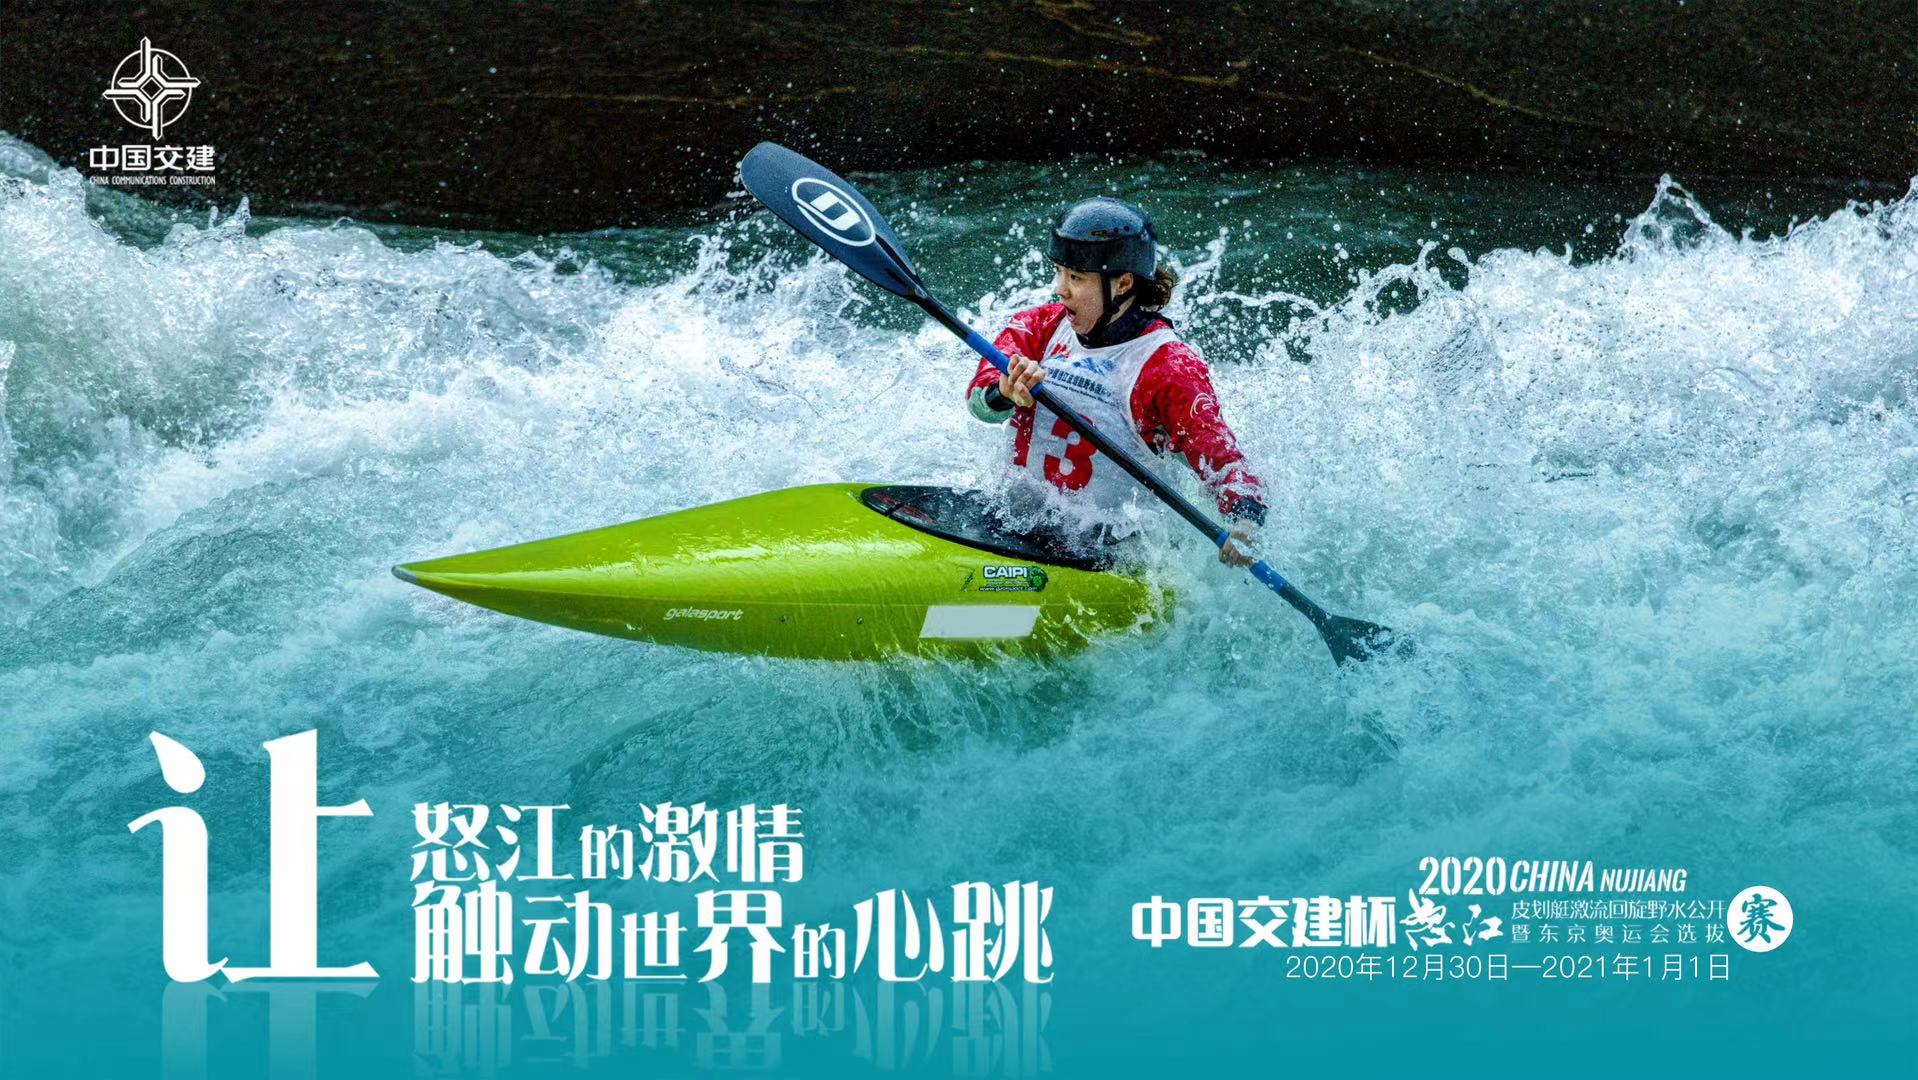 “中国交建杯”2020中国怒江皮划艇激流回旋野水公开赛将举行